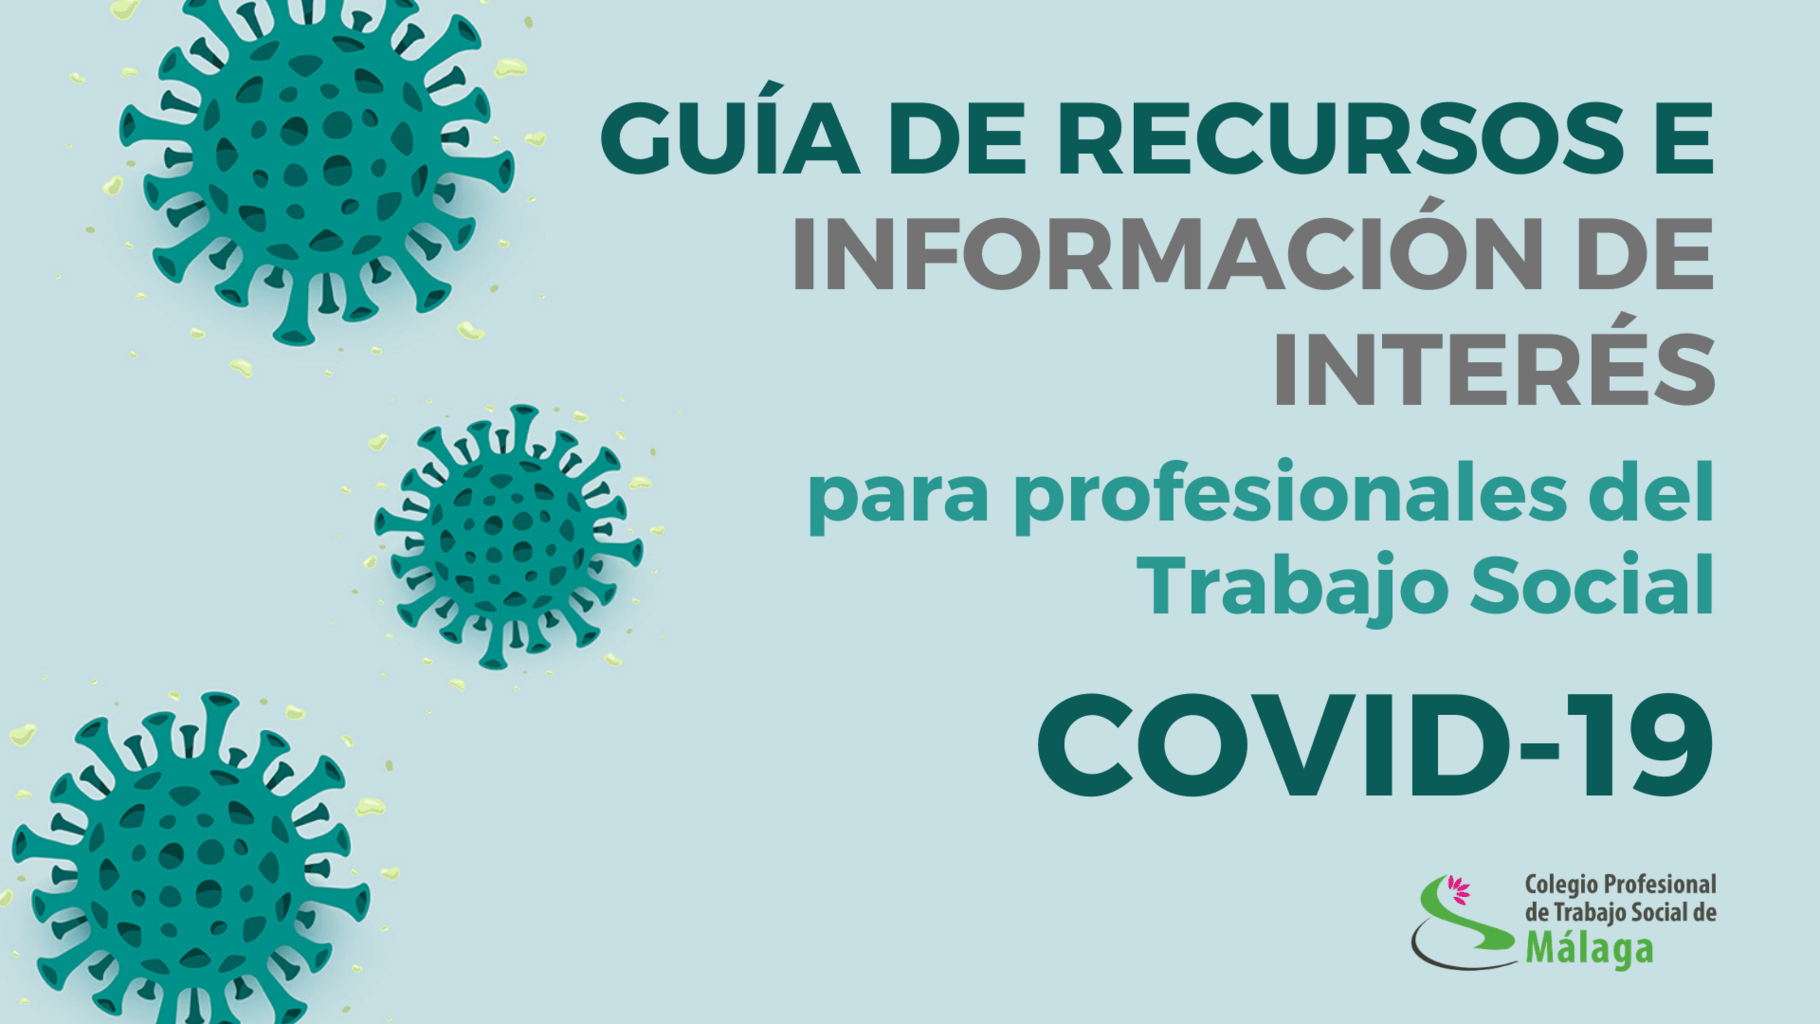 Covid 19 Colegio Profesional De Trabajo Social De Malaga